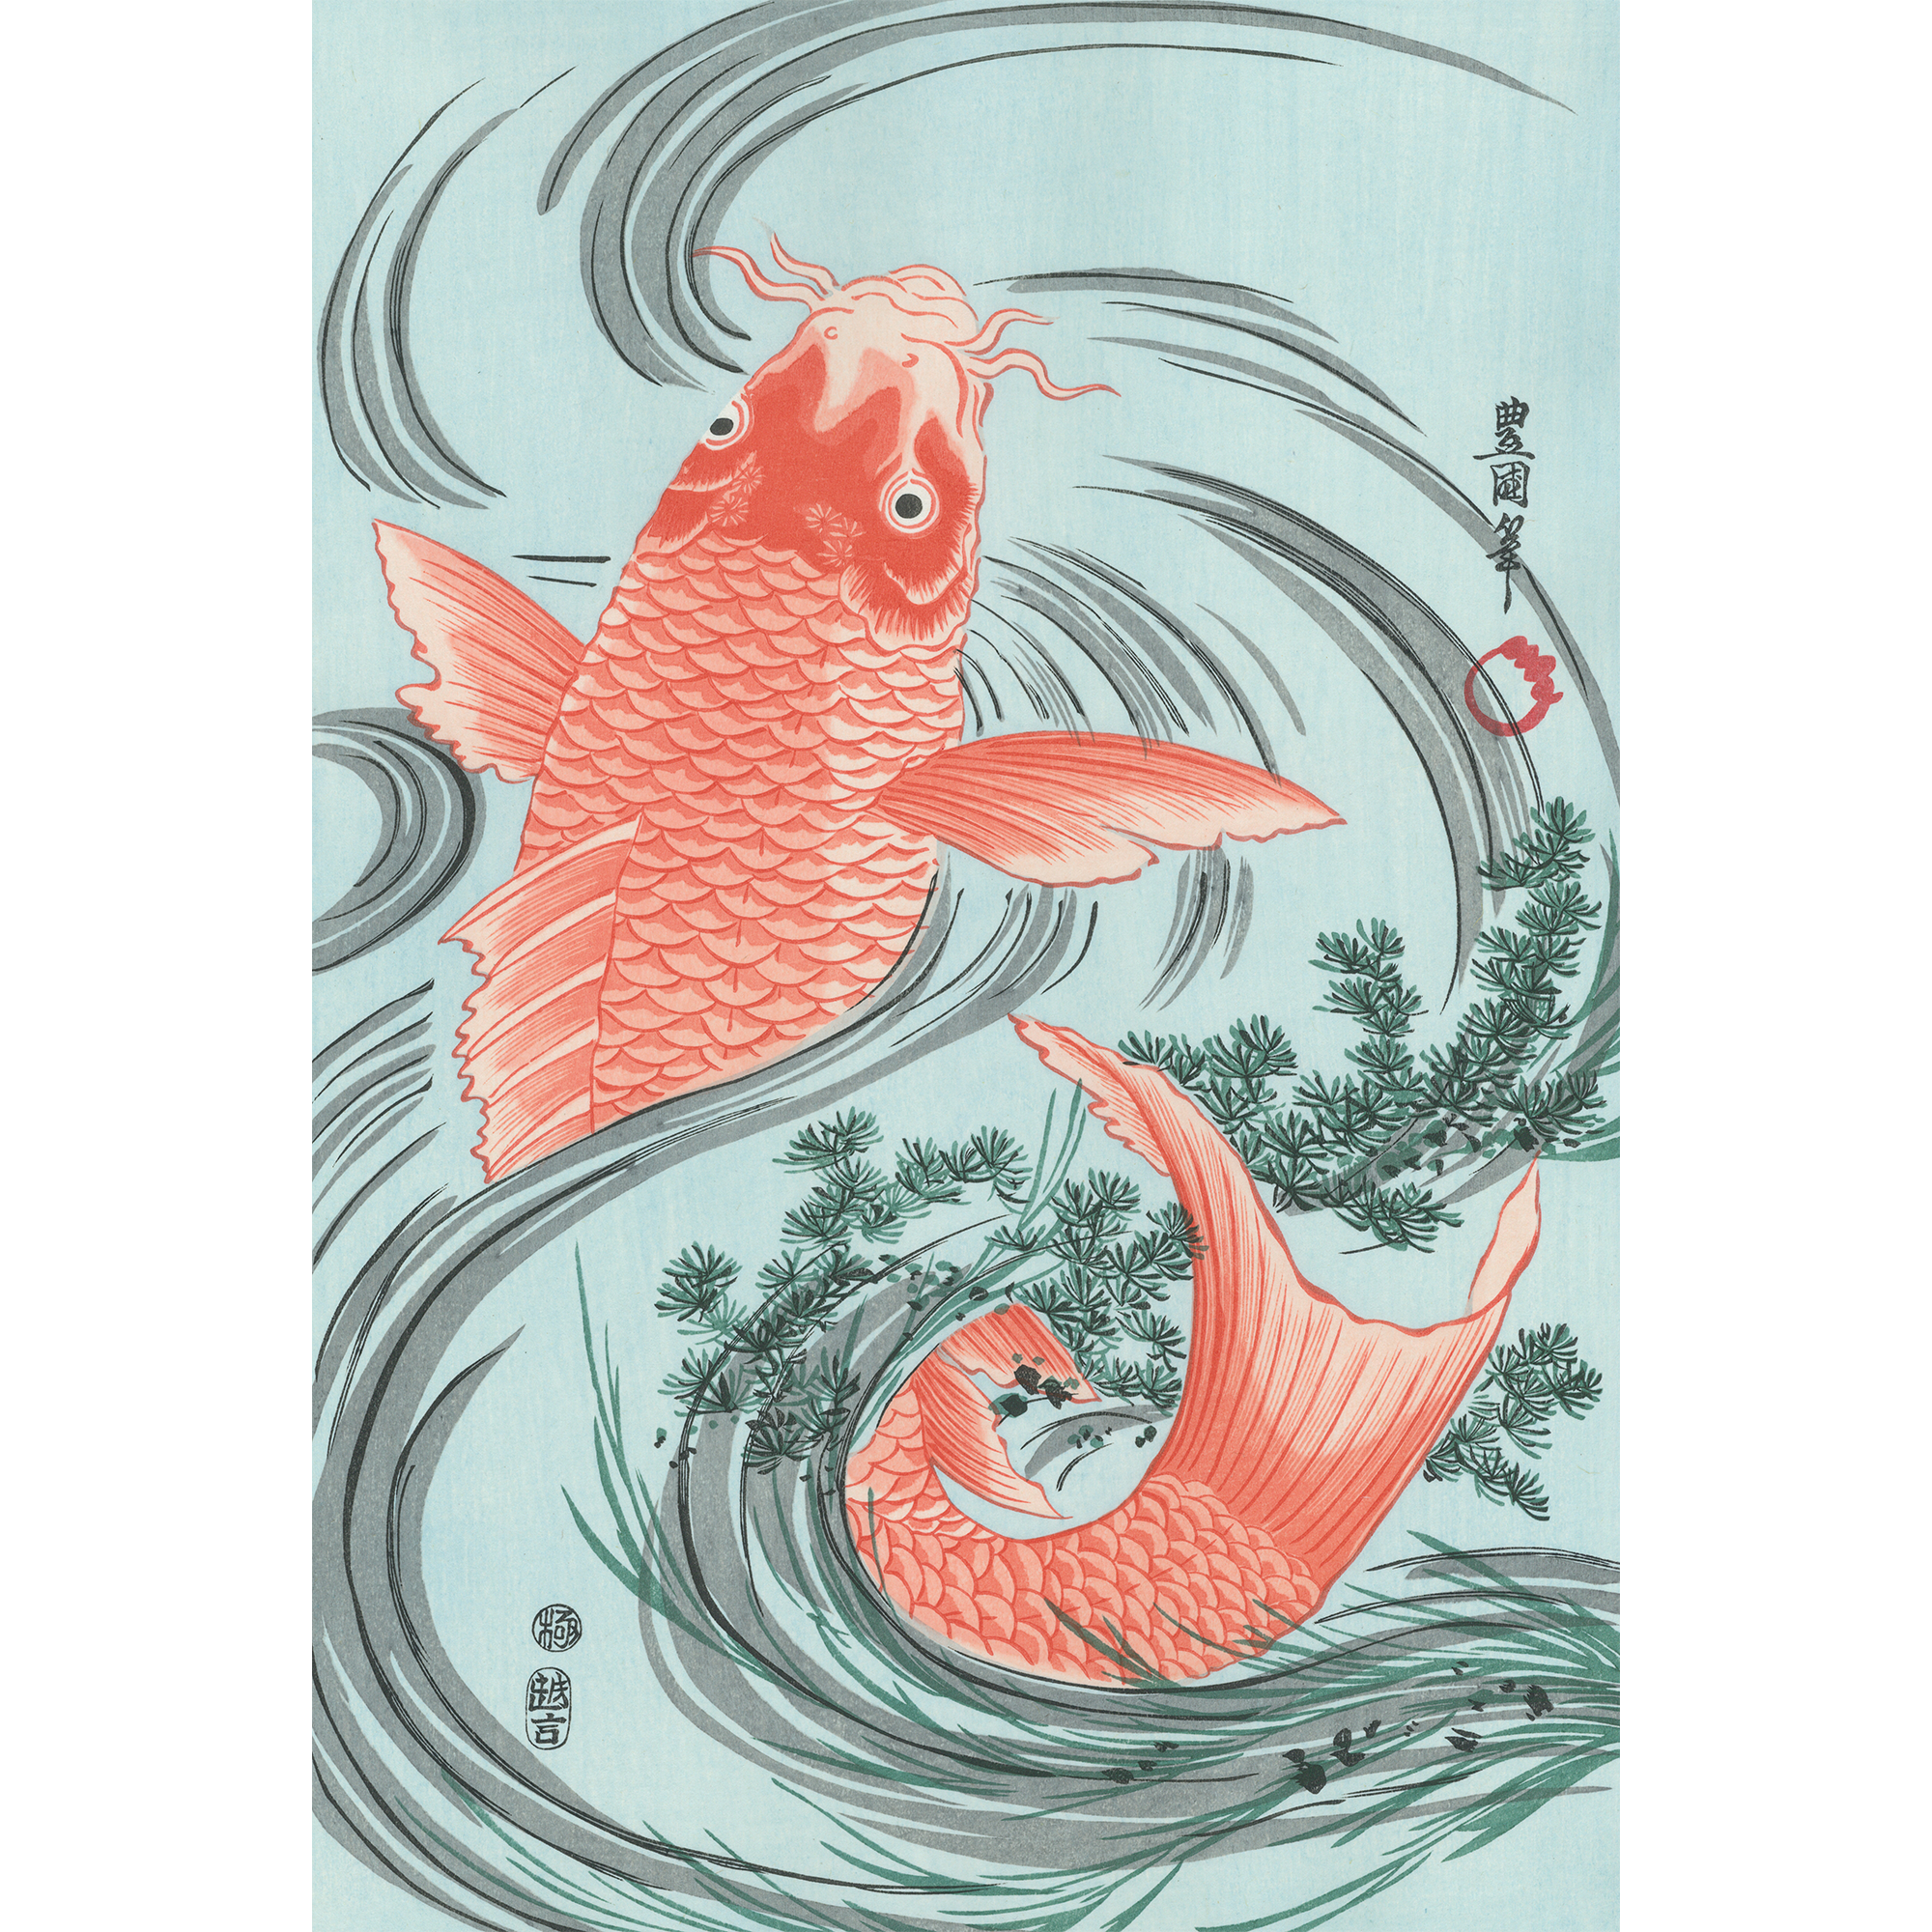 歌川豊国「緋鯉」アダチ版復刻浮世絵